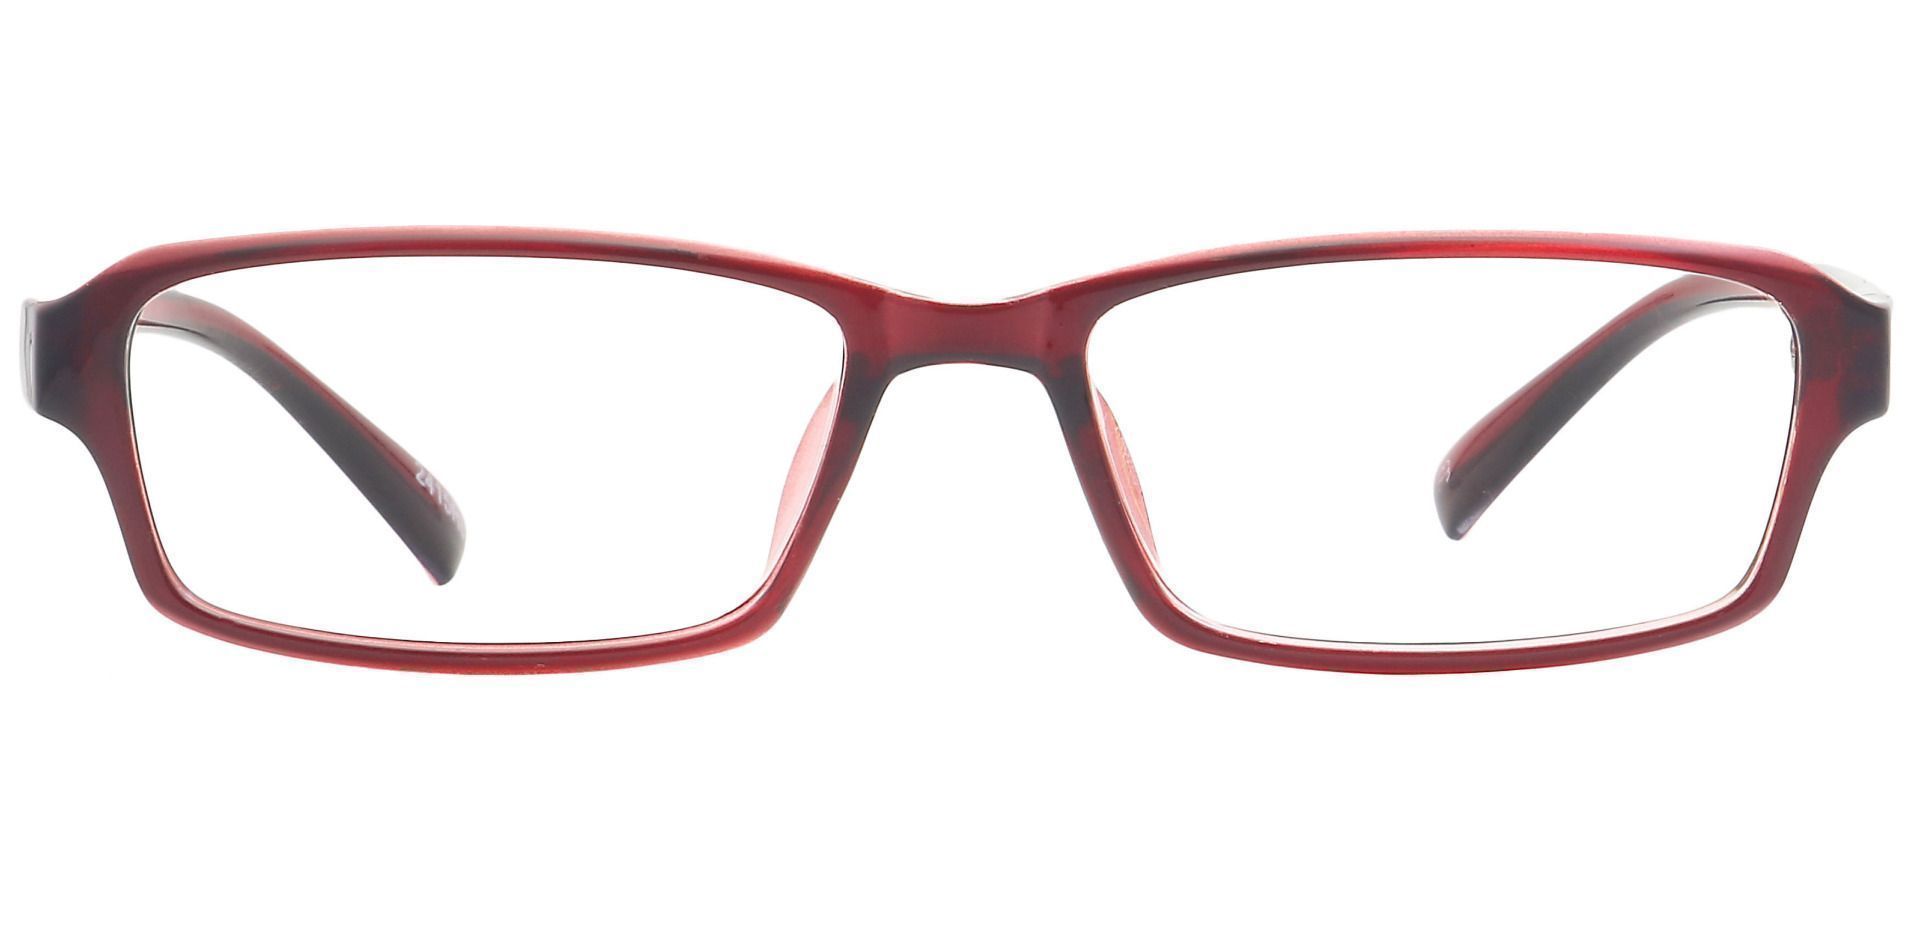 Delaney Rectangle Eyeglasses Frame - Red